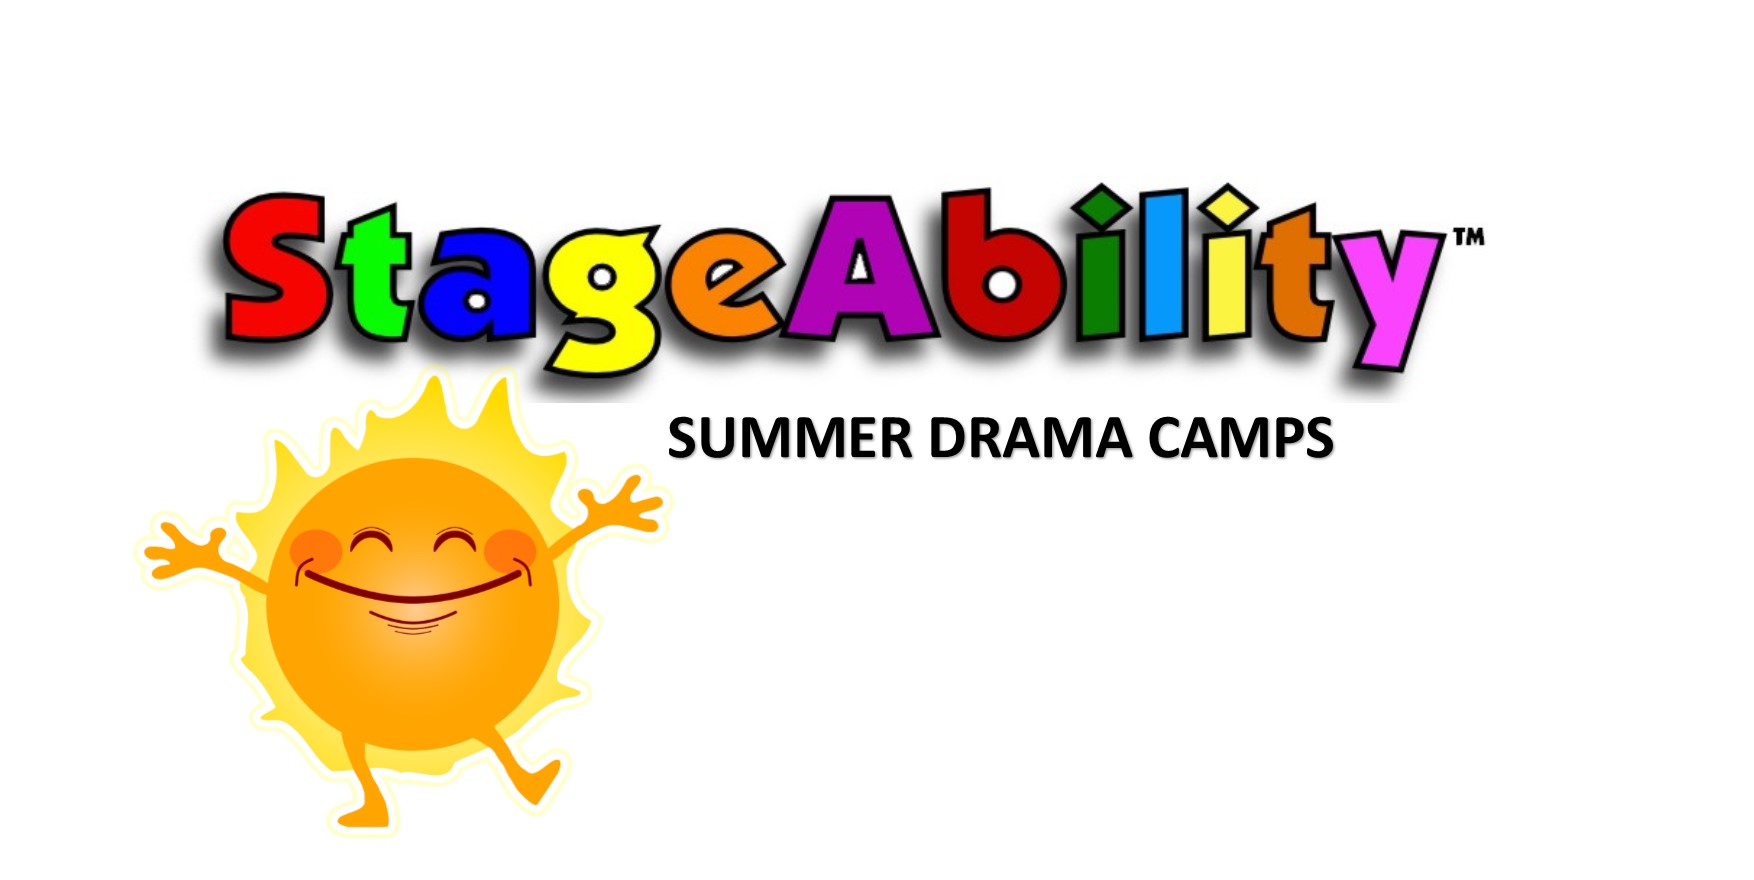 Stageability Summer Drama Camp Tilehurst Red Kite Days